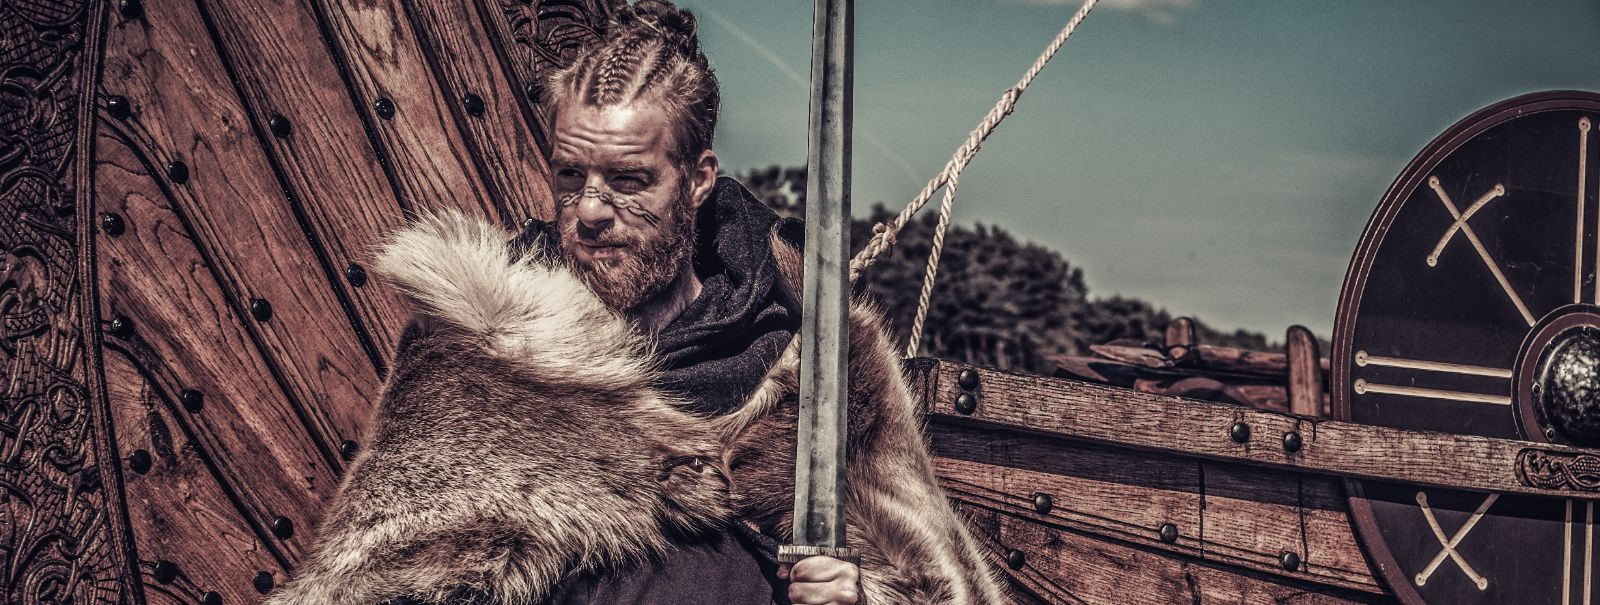 Viikingid olid 8. sajandi lõpust kuni 11. sajandi alguseni meresõitjad, ...